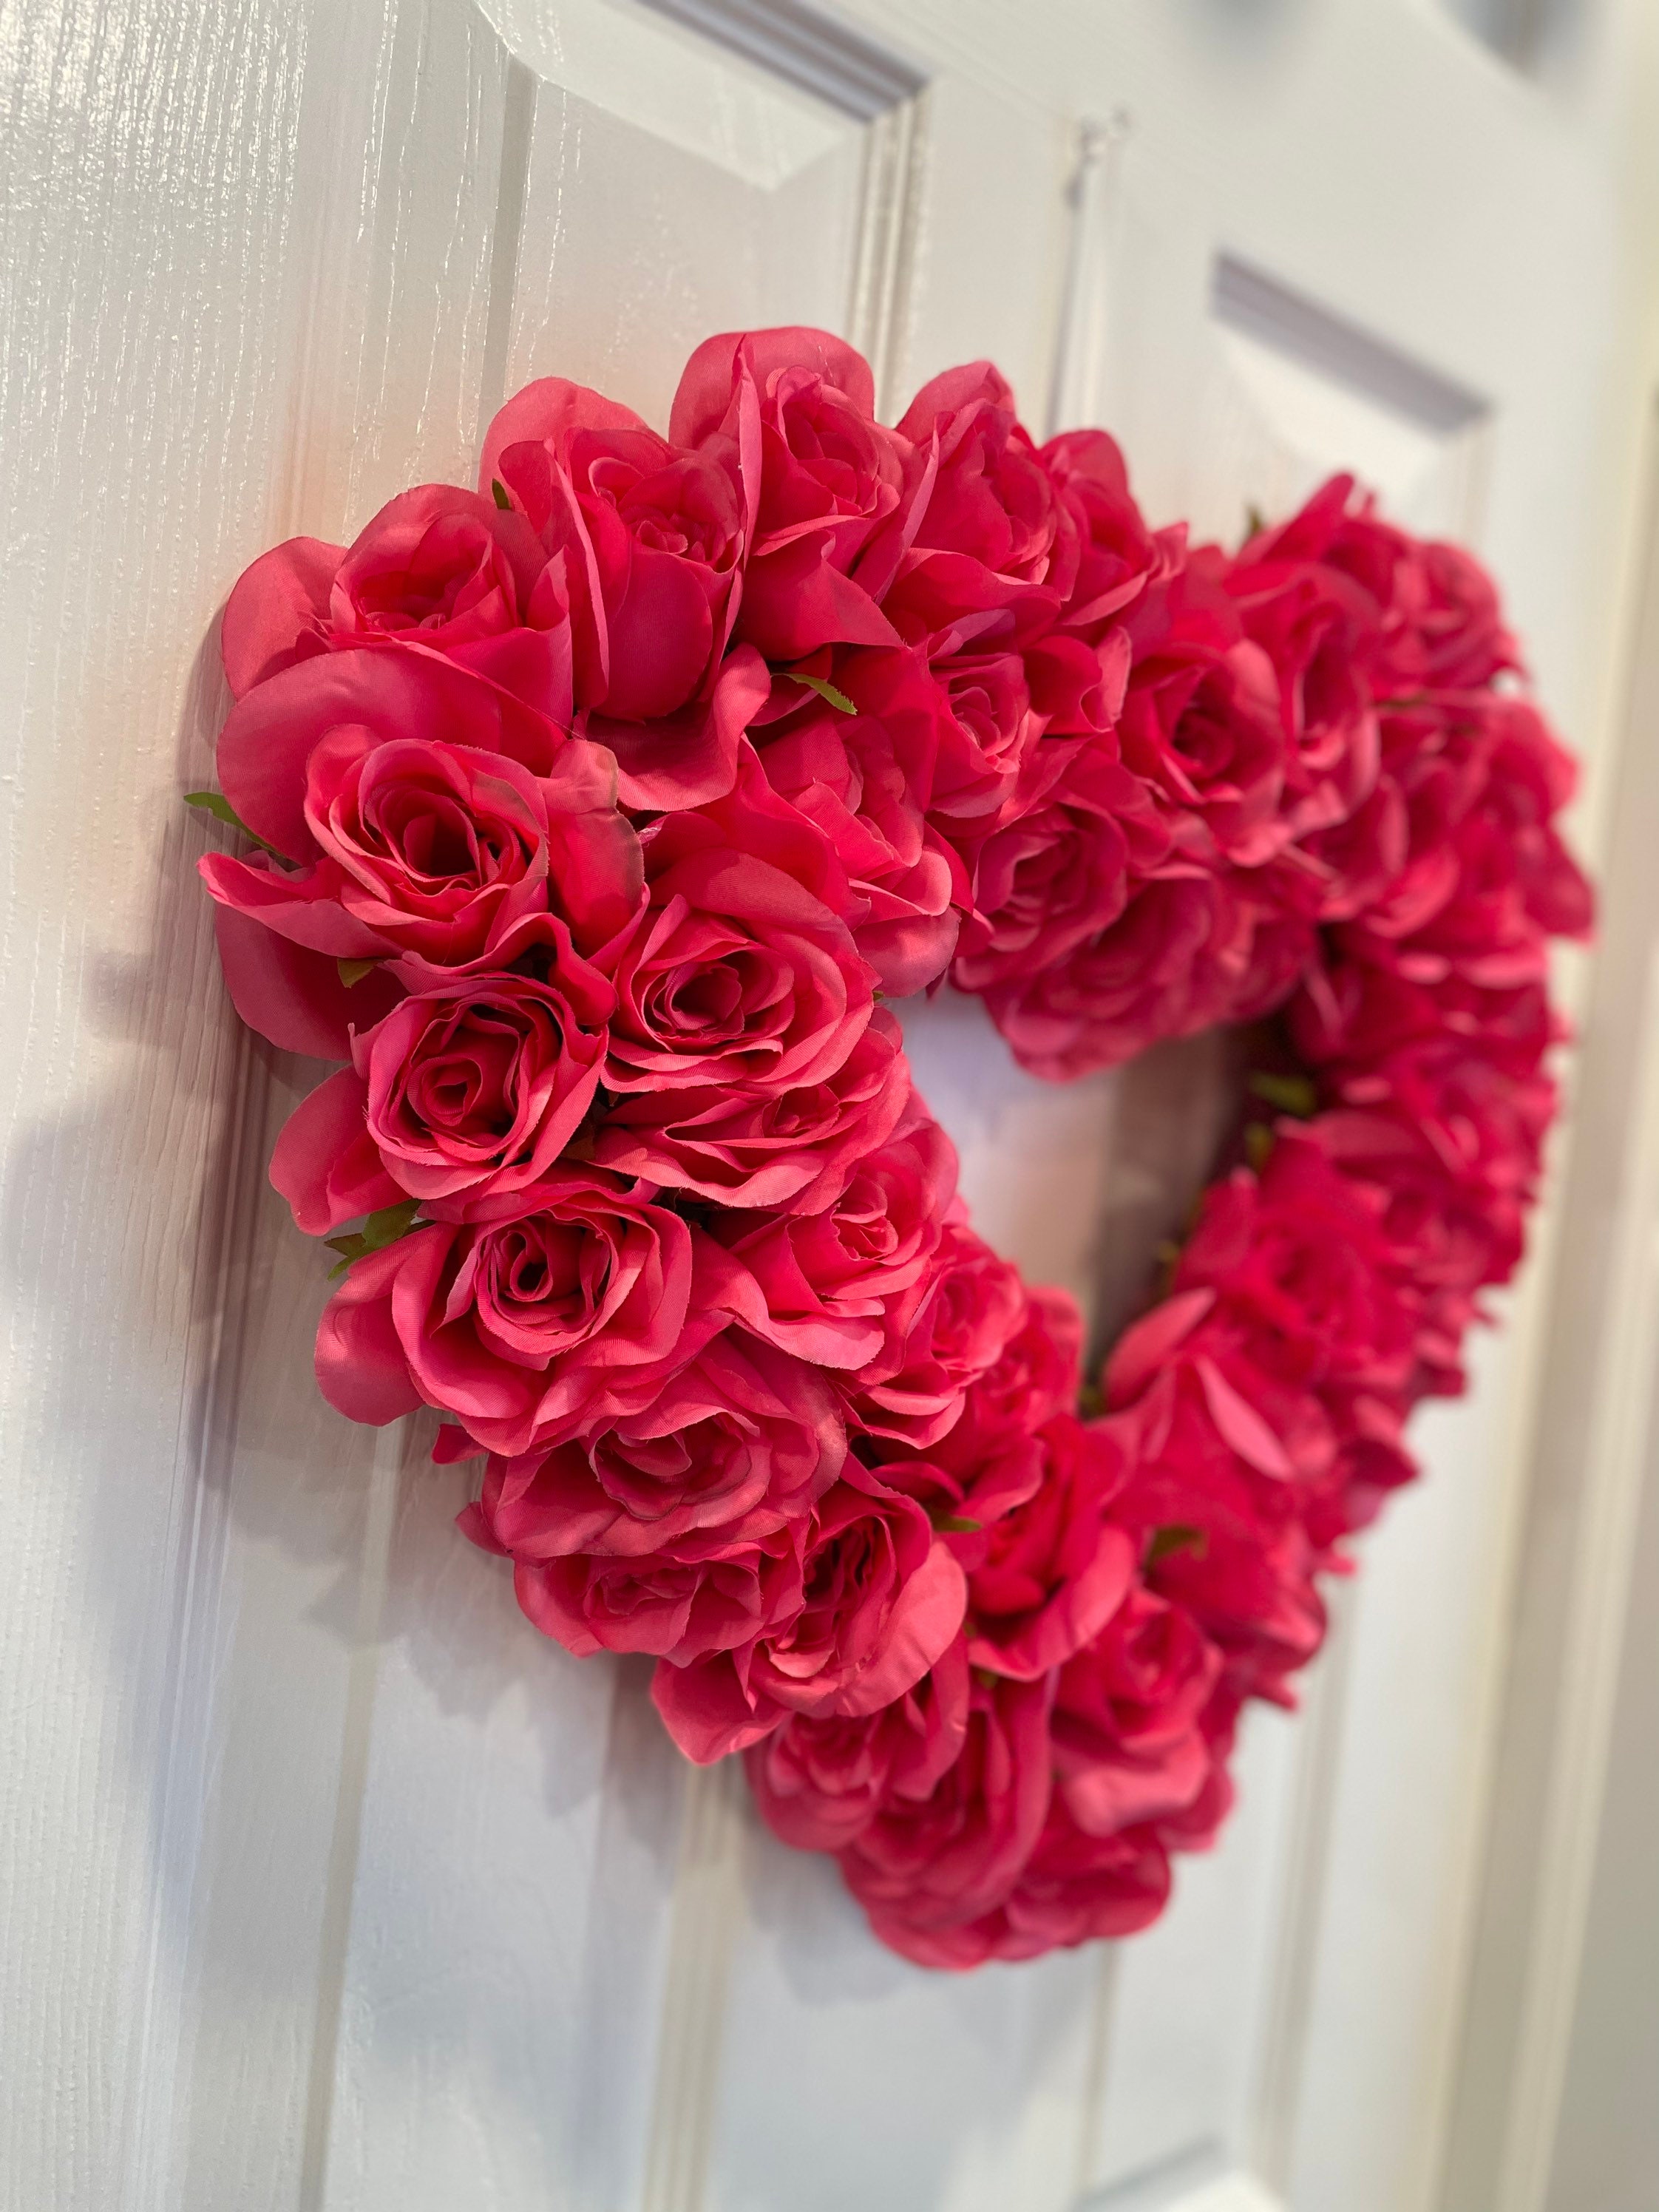 Pink Rose Garden Heart Live Wreath